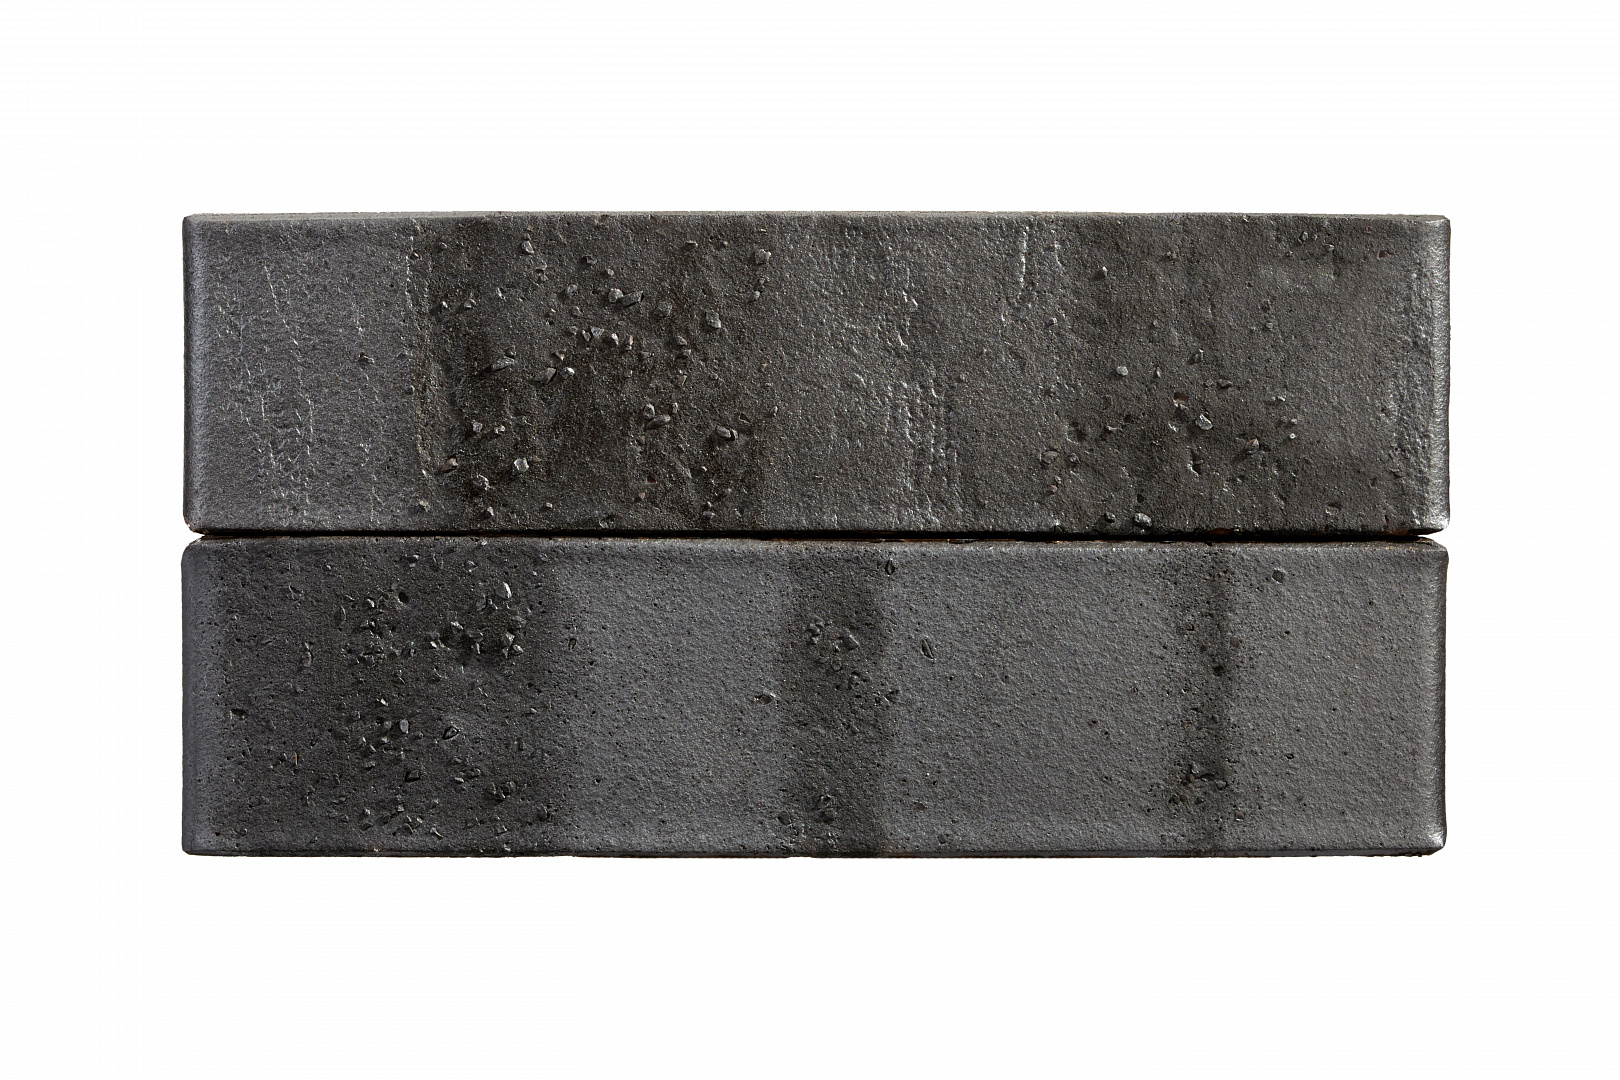 Кирпич лицевой керамический Старооскольский Recke Krator, черный (Art 5-32-00-2-12), рельефный, 1,0НФ, М200-250, (480шт, упаковка) фото №6